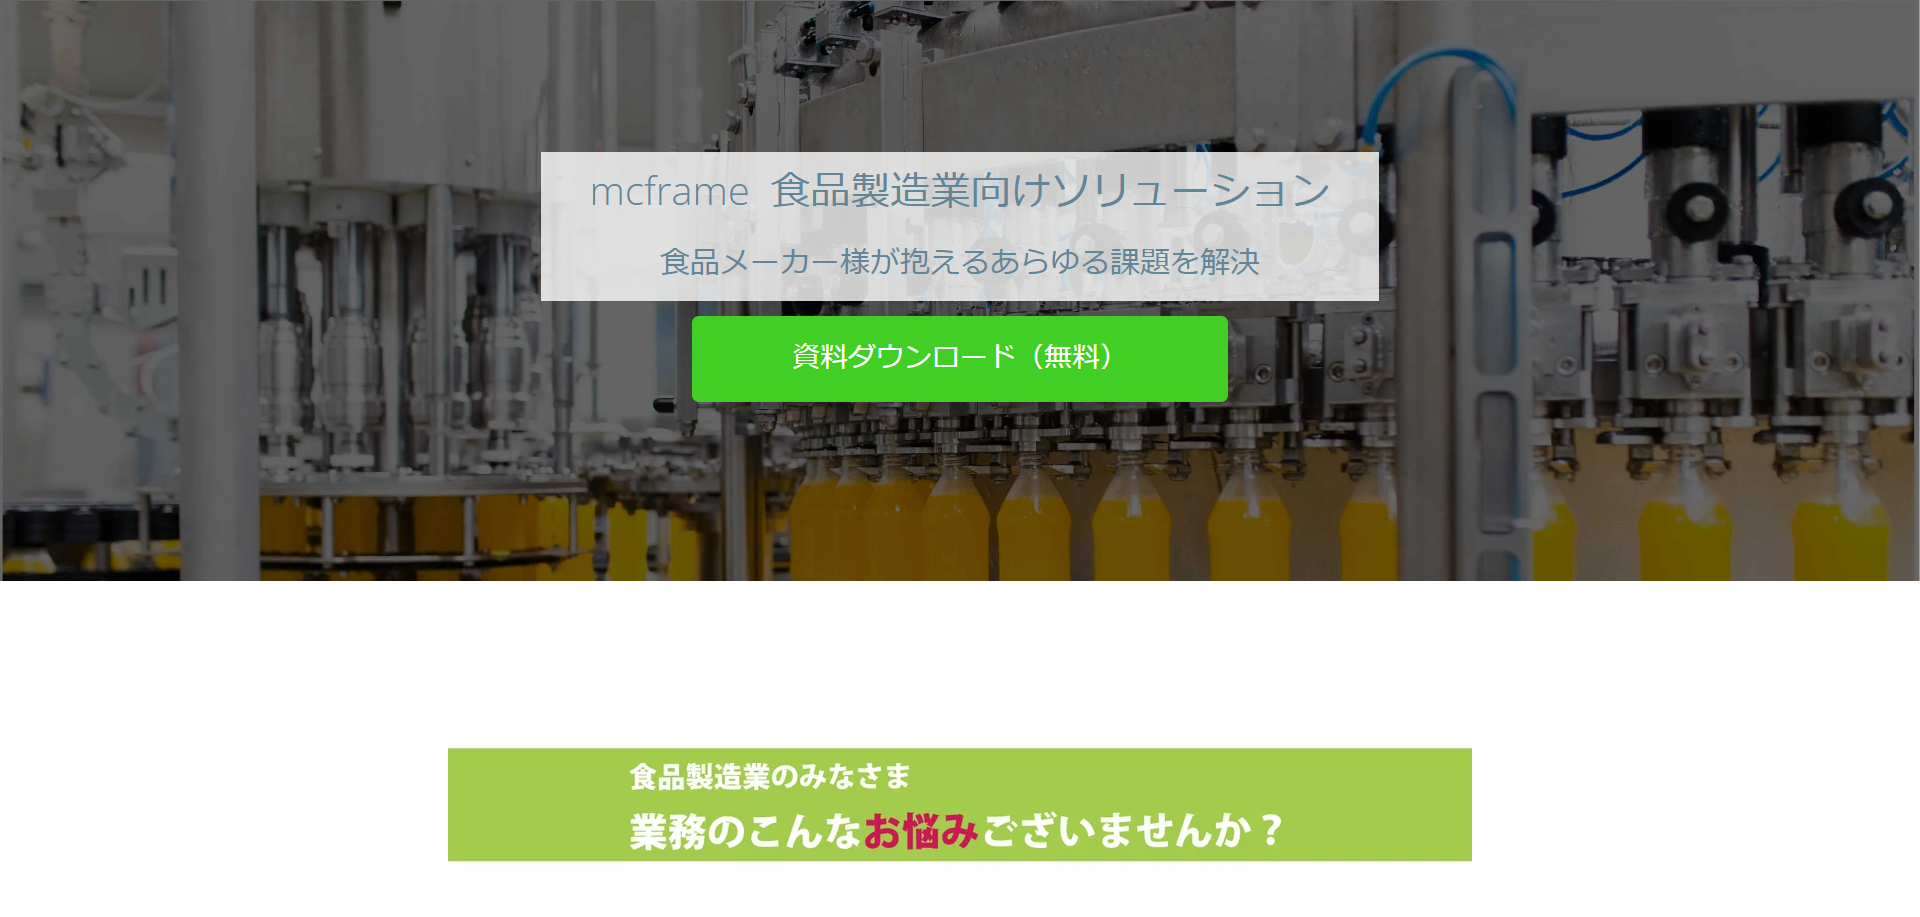 食品業界向けソリューション『mcframe』